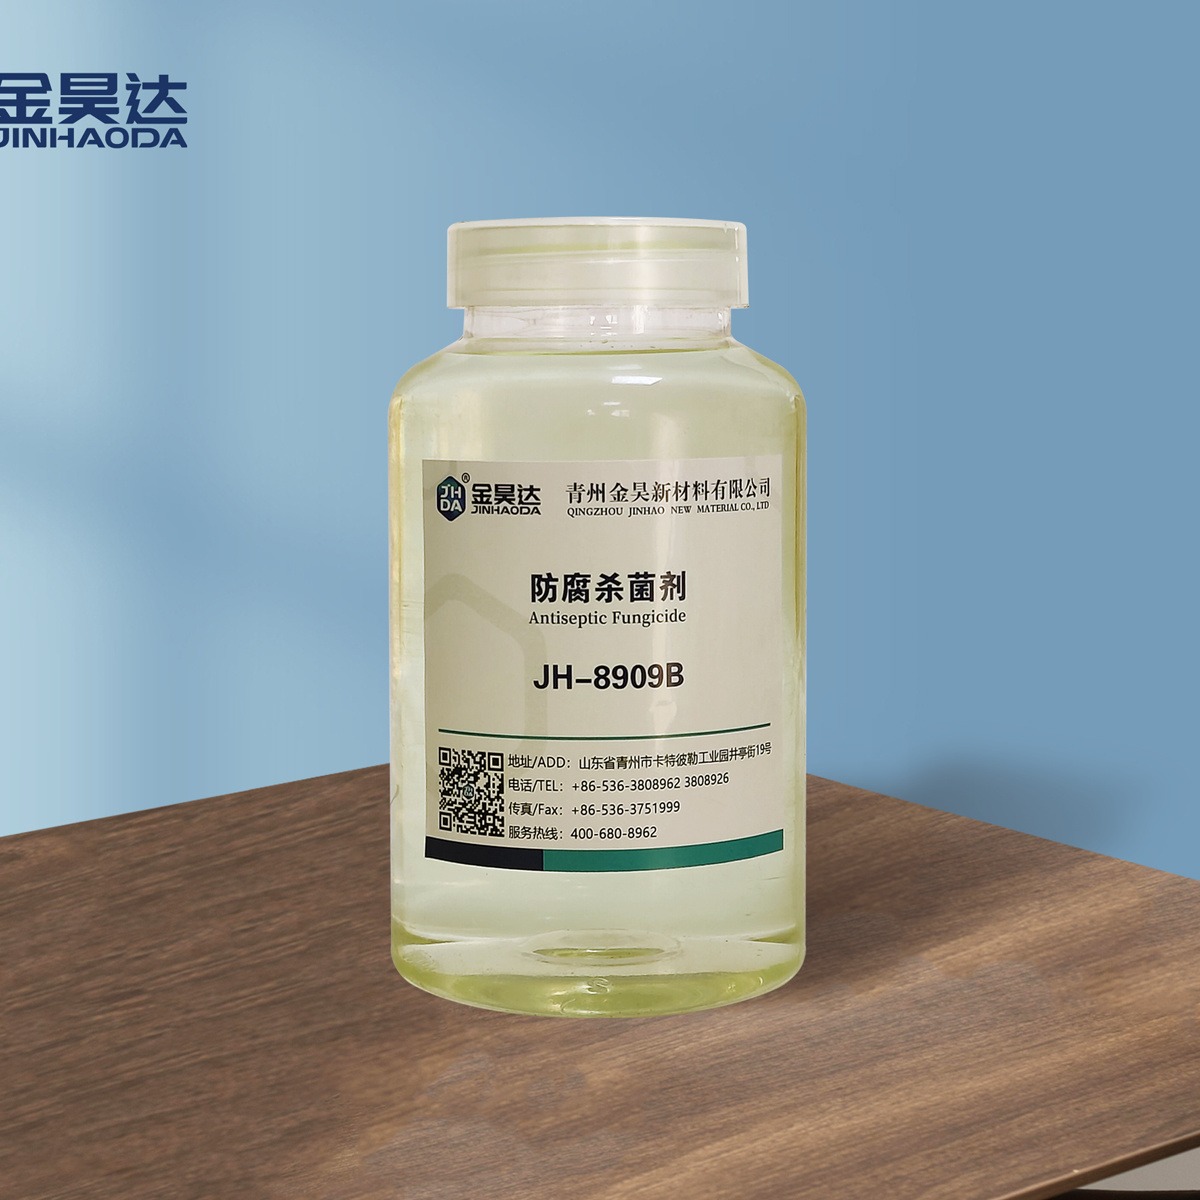 环保杀菌剂 无毒、不易受pH值变化 使用方便 山东金昊 JH-8909B环保杀菌剂 生产厂家